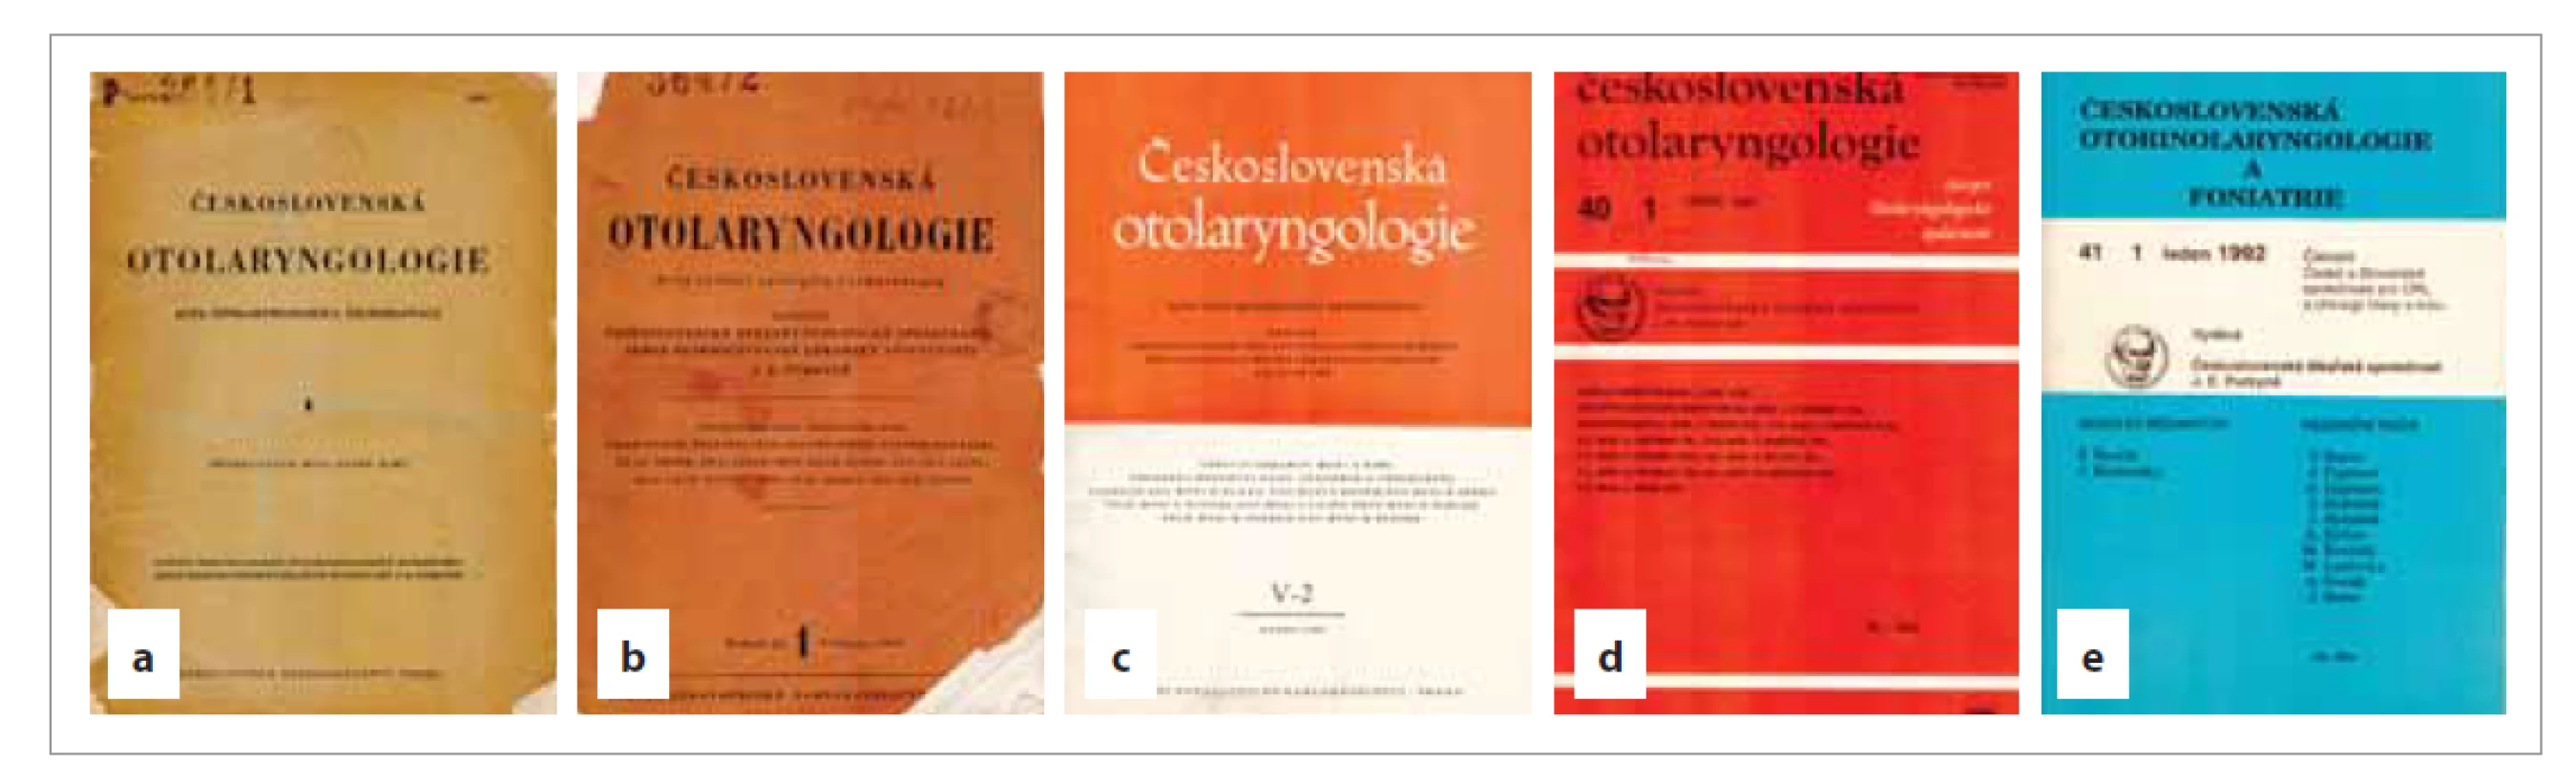 Grafika časopisu od jeho založení v roce 1952 (a), od roku 1956 (b), další formát opouští karmínovou barvu a nahrazuje
ji oranžová barva přechodem k nakladatelství Avicenum od roku 1971 (c, d). Na něj navazuje stále pokračující
formát A5 v roce 1991. Tímto rokem opouští časopis oranžovou barvu a v roce 1992 se objevuje v NTS ČLS JEP barva
modrá (tiskárny používají v té době maximálně dvoubarevný tisk). Text byl tzv. sázený, resp. přepisovaný tiskárnami
a korektory. Rok 1992 je posledním rokem malého formátu. (Tisk uložen v knihovně Kliniky otorinolaryngologie a chirurgie
hlavy a krku 1. LF UK a FN v Motole.)<br>
Fig. 5. Graphics of the magazine since its founding in 1952 (a), since 1956 (b), another format leaves the crimson color and
is replaced by orange by the transition to the publishing house Avicenum from 1971 (c, d). It is followed by the continuing
A5 format in 1991. This year the magazine leaves the orange color and in 1992 the color blue appears in the NTS ČLS JEP
(printers use a maximum of two-color printing at that time). The text was so-called bet, resp. transcribed by printers and
proofreaders. 1992 is the last year of small format. (Print stored in the library of the Department of Otorhinolaryngology and
Head and Neck Surgery, 1st Medical Faculty, Charles University, University Hospital in Motol.)